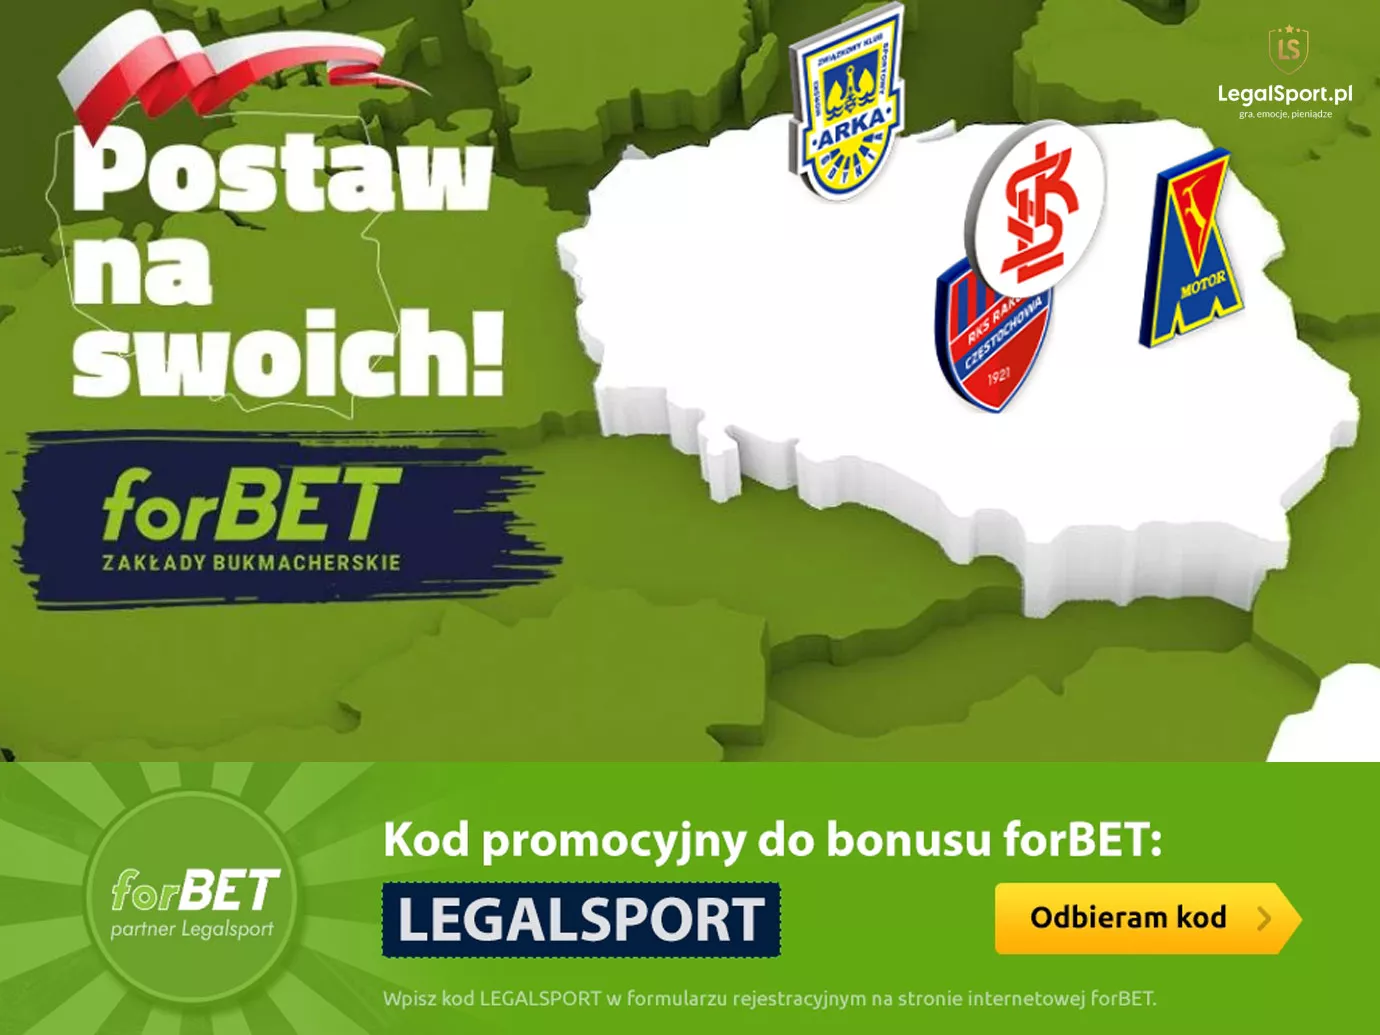 Postaw na swoich - promocja forBET na mecze polskich klubów piłkarskich